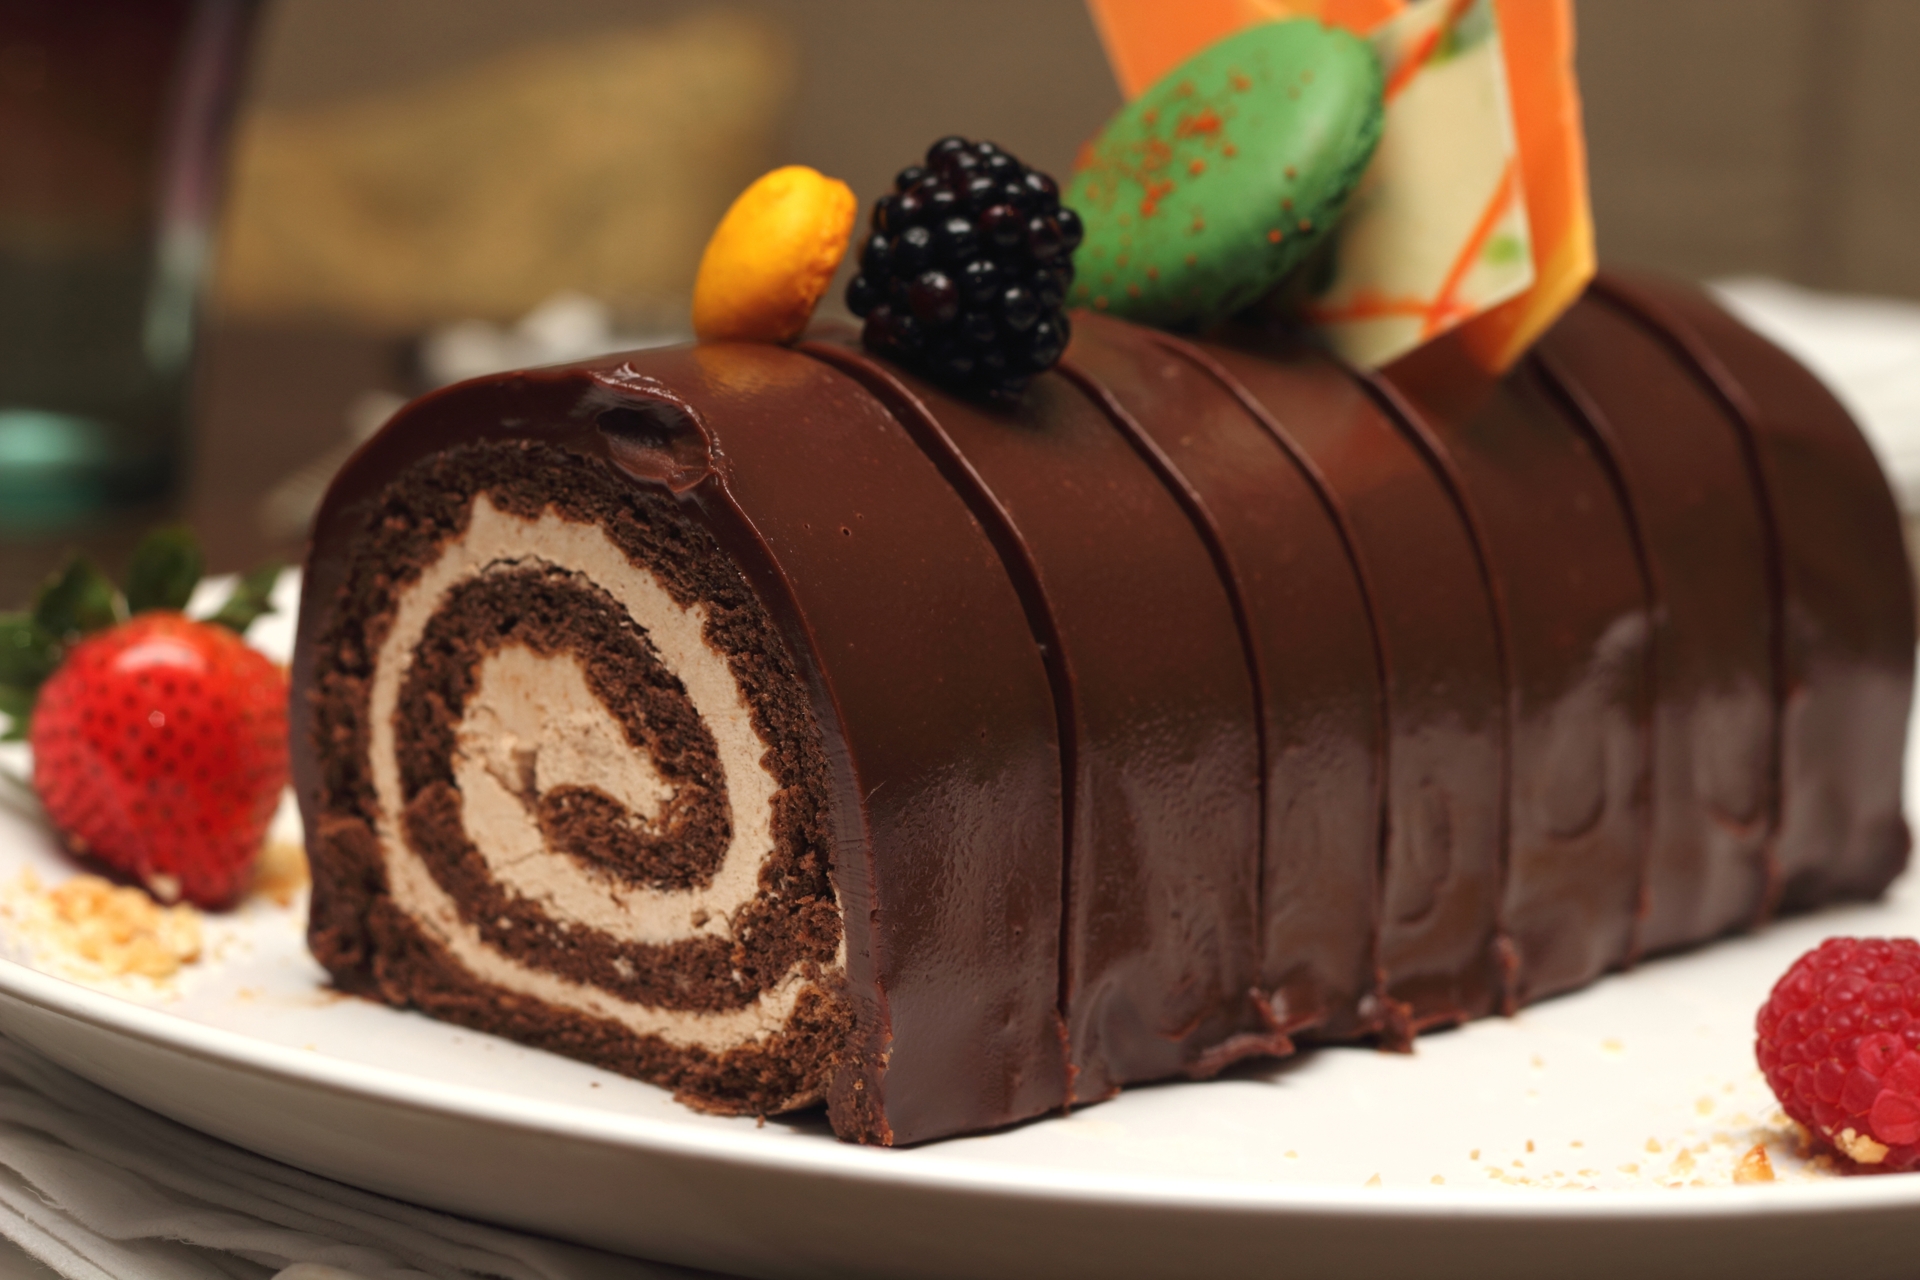 Bộ hình nền Chocolate ngọt ngào nhất cho những người hảo ngọt - [Kích thước hình ảnh: 1920x1280 px]